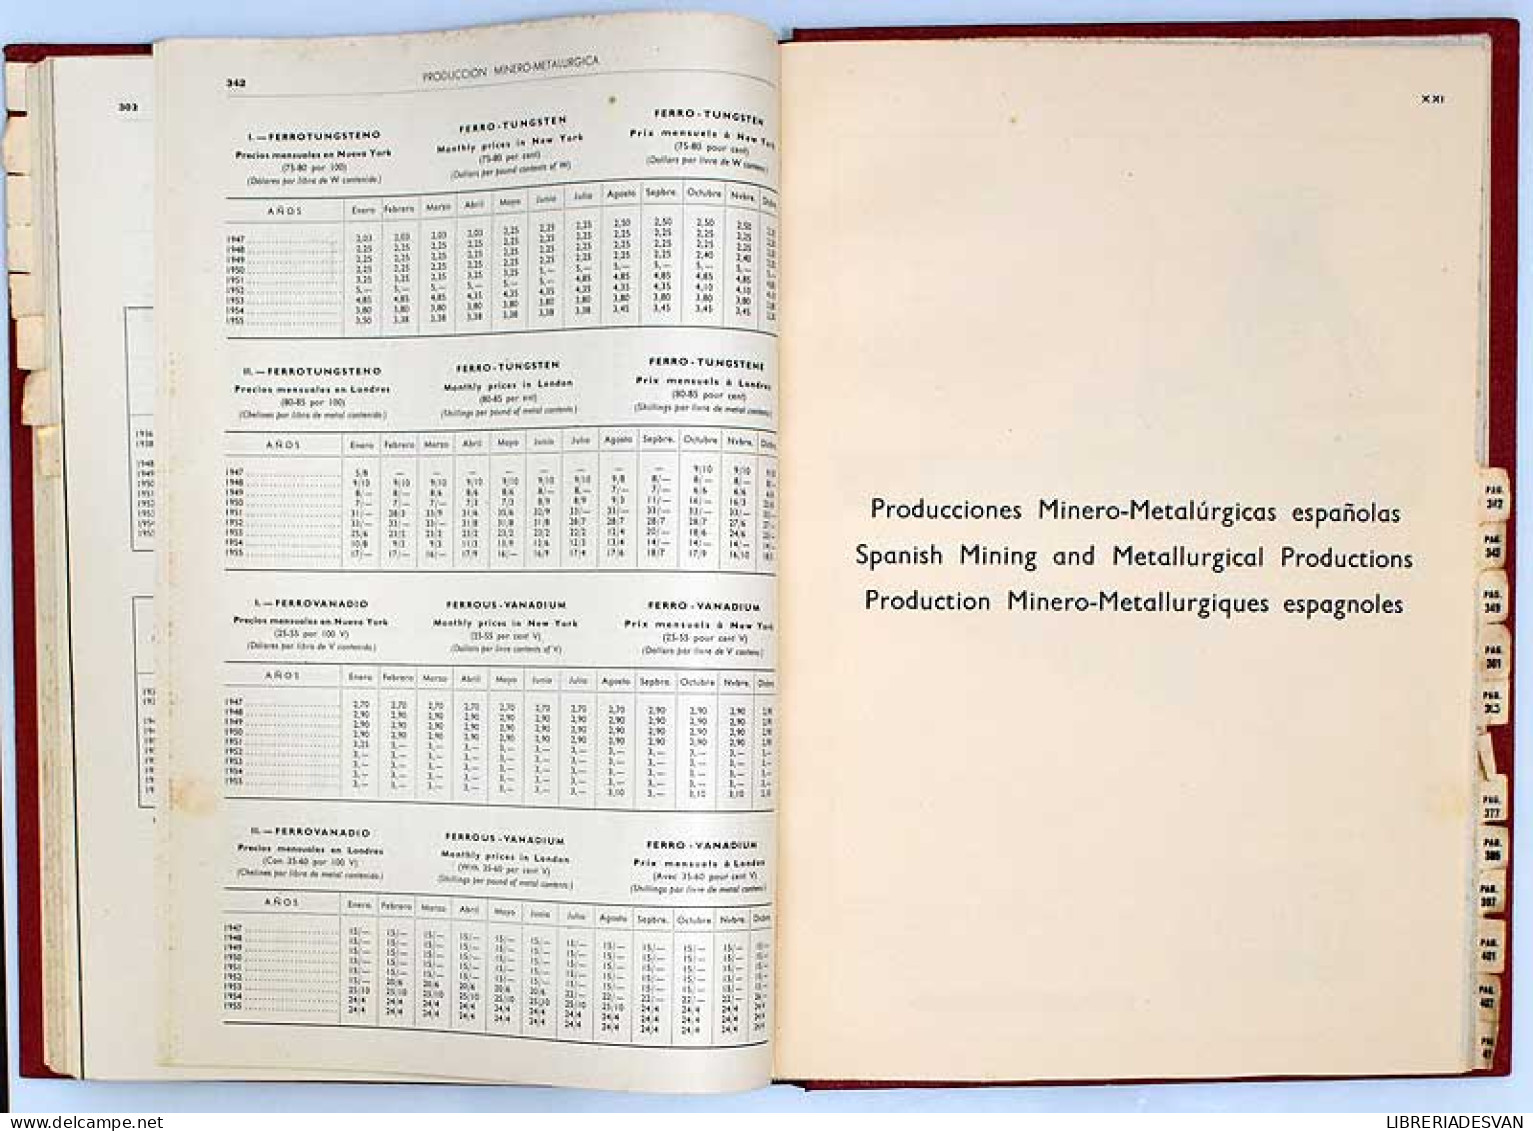 La producción minero-metalúrgica mundial en el año 1955